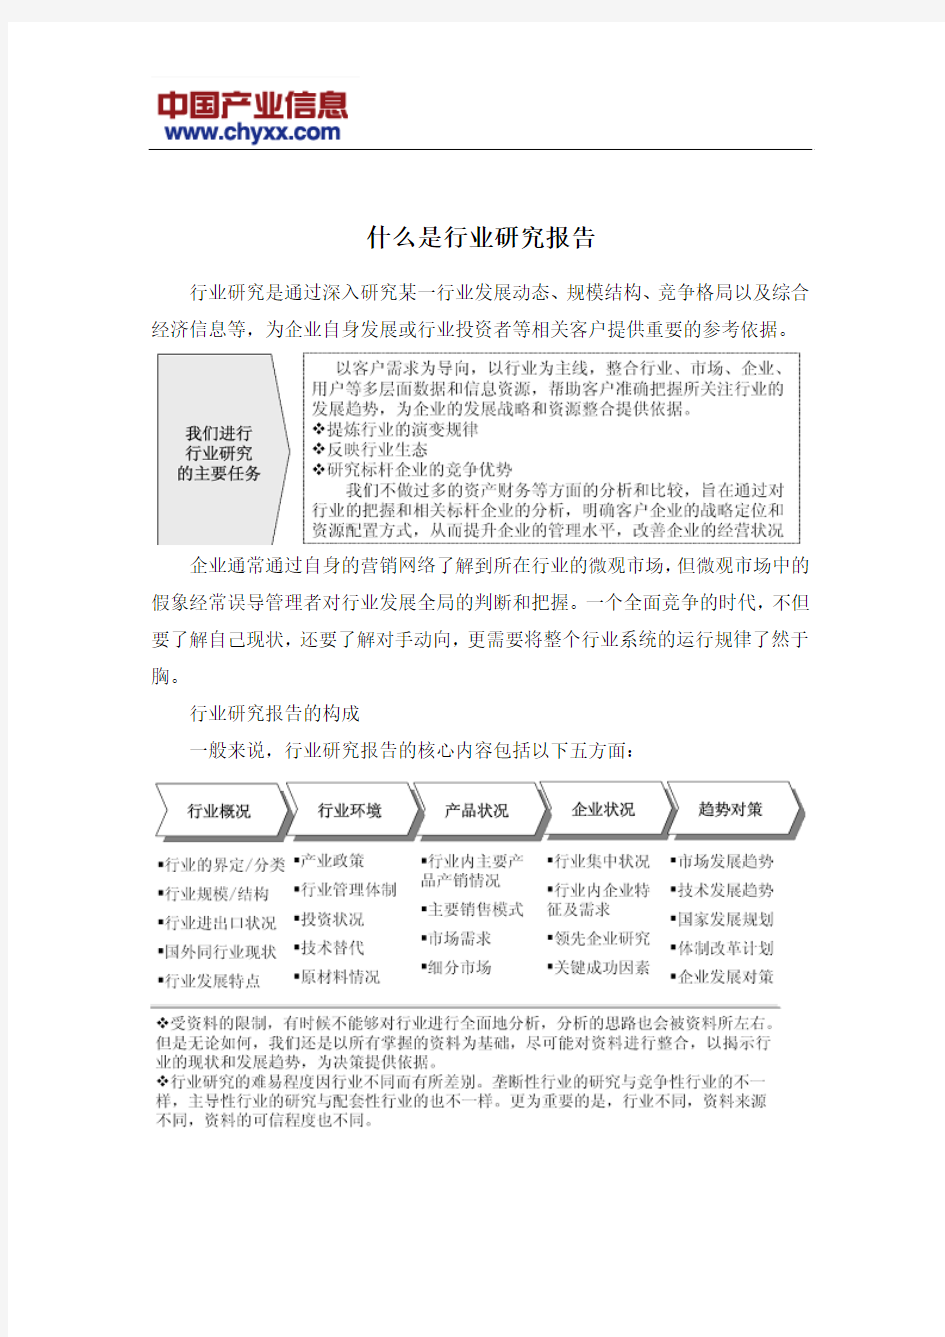 2015-2020年中国接触网作业车市场评估